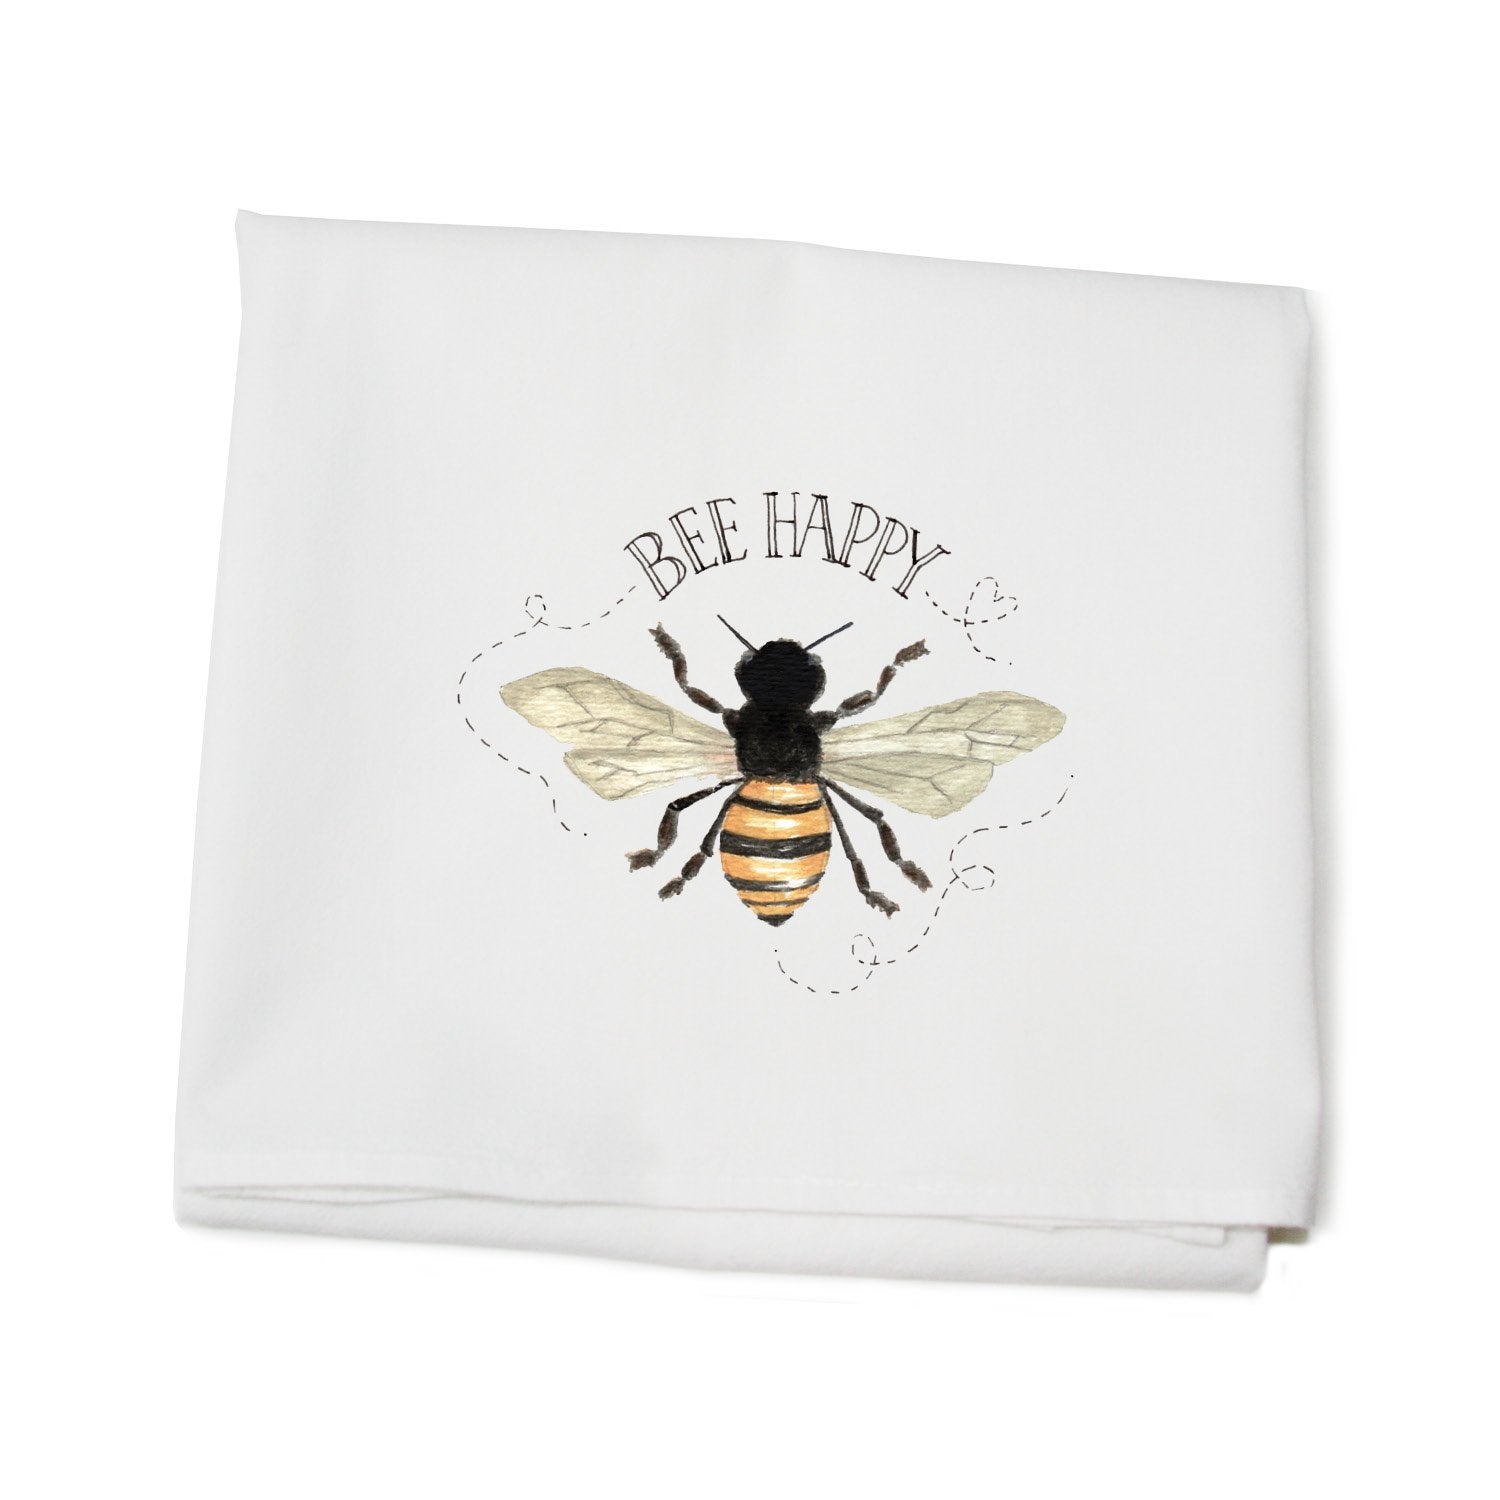 Bee Happy Kitchen Towel